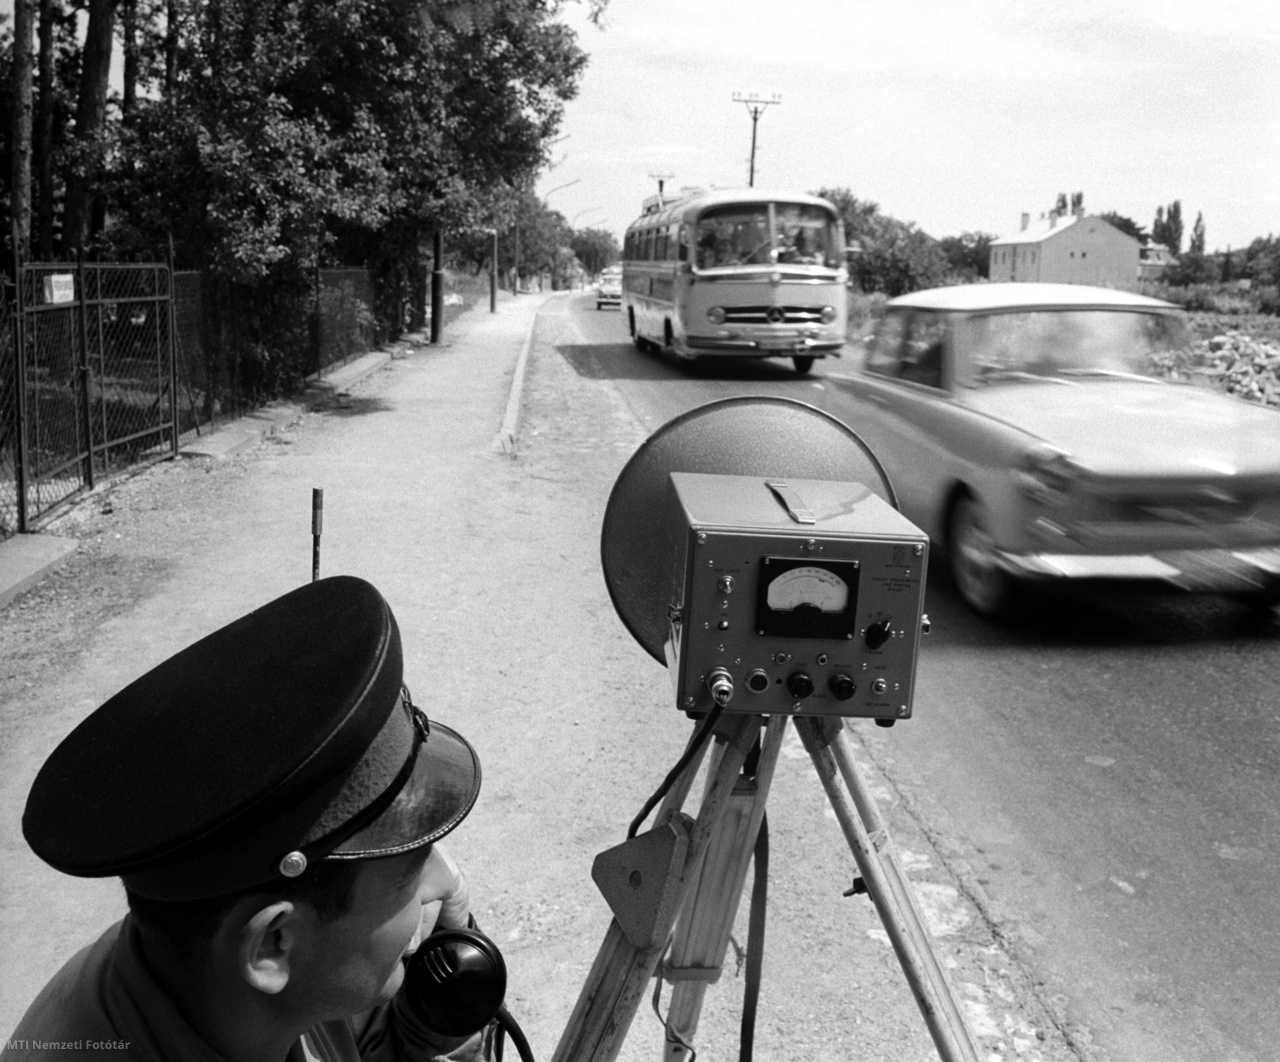 Veszprém megye, 1965. július 29. Buckó György törzsőrmester telefonon ad jelentést a sebességkorlátozást megszegő gépkocsiról. A balatoni üdülőtelepeken - a gyalogosok védelmében a gépkocsik sebességét 40 km/h-ra maximálták. Az új szabályzat megtartása érdekében a közlekedési rendészet - radarkészülék segítségével - fokozottan ellenőrzi a balatoni üdülőtelepek gépkocsiforgalmát Veszprém megyében.